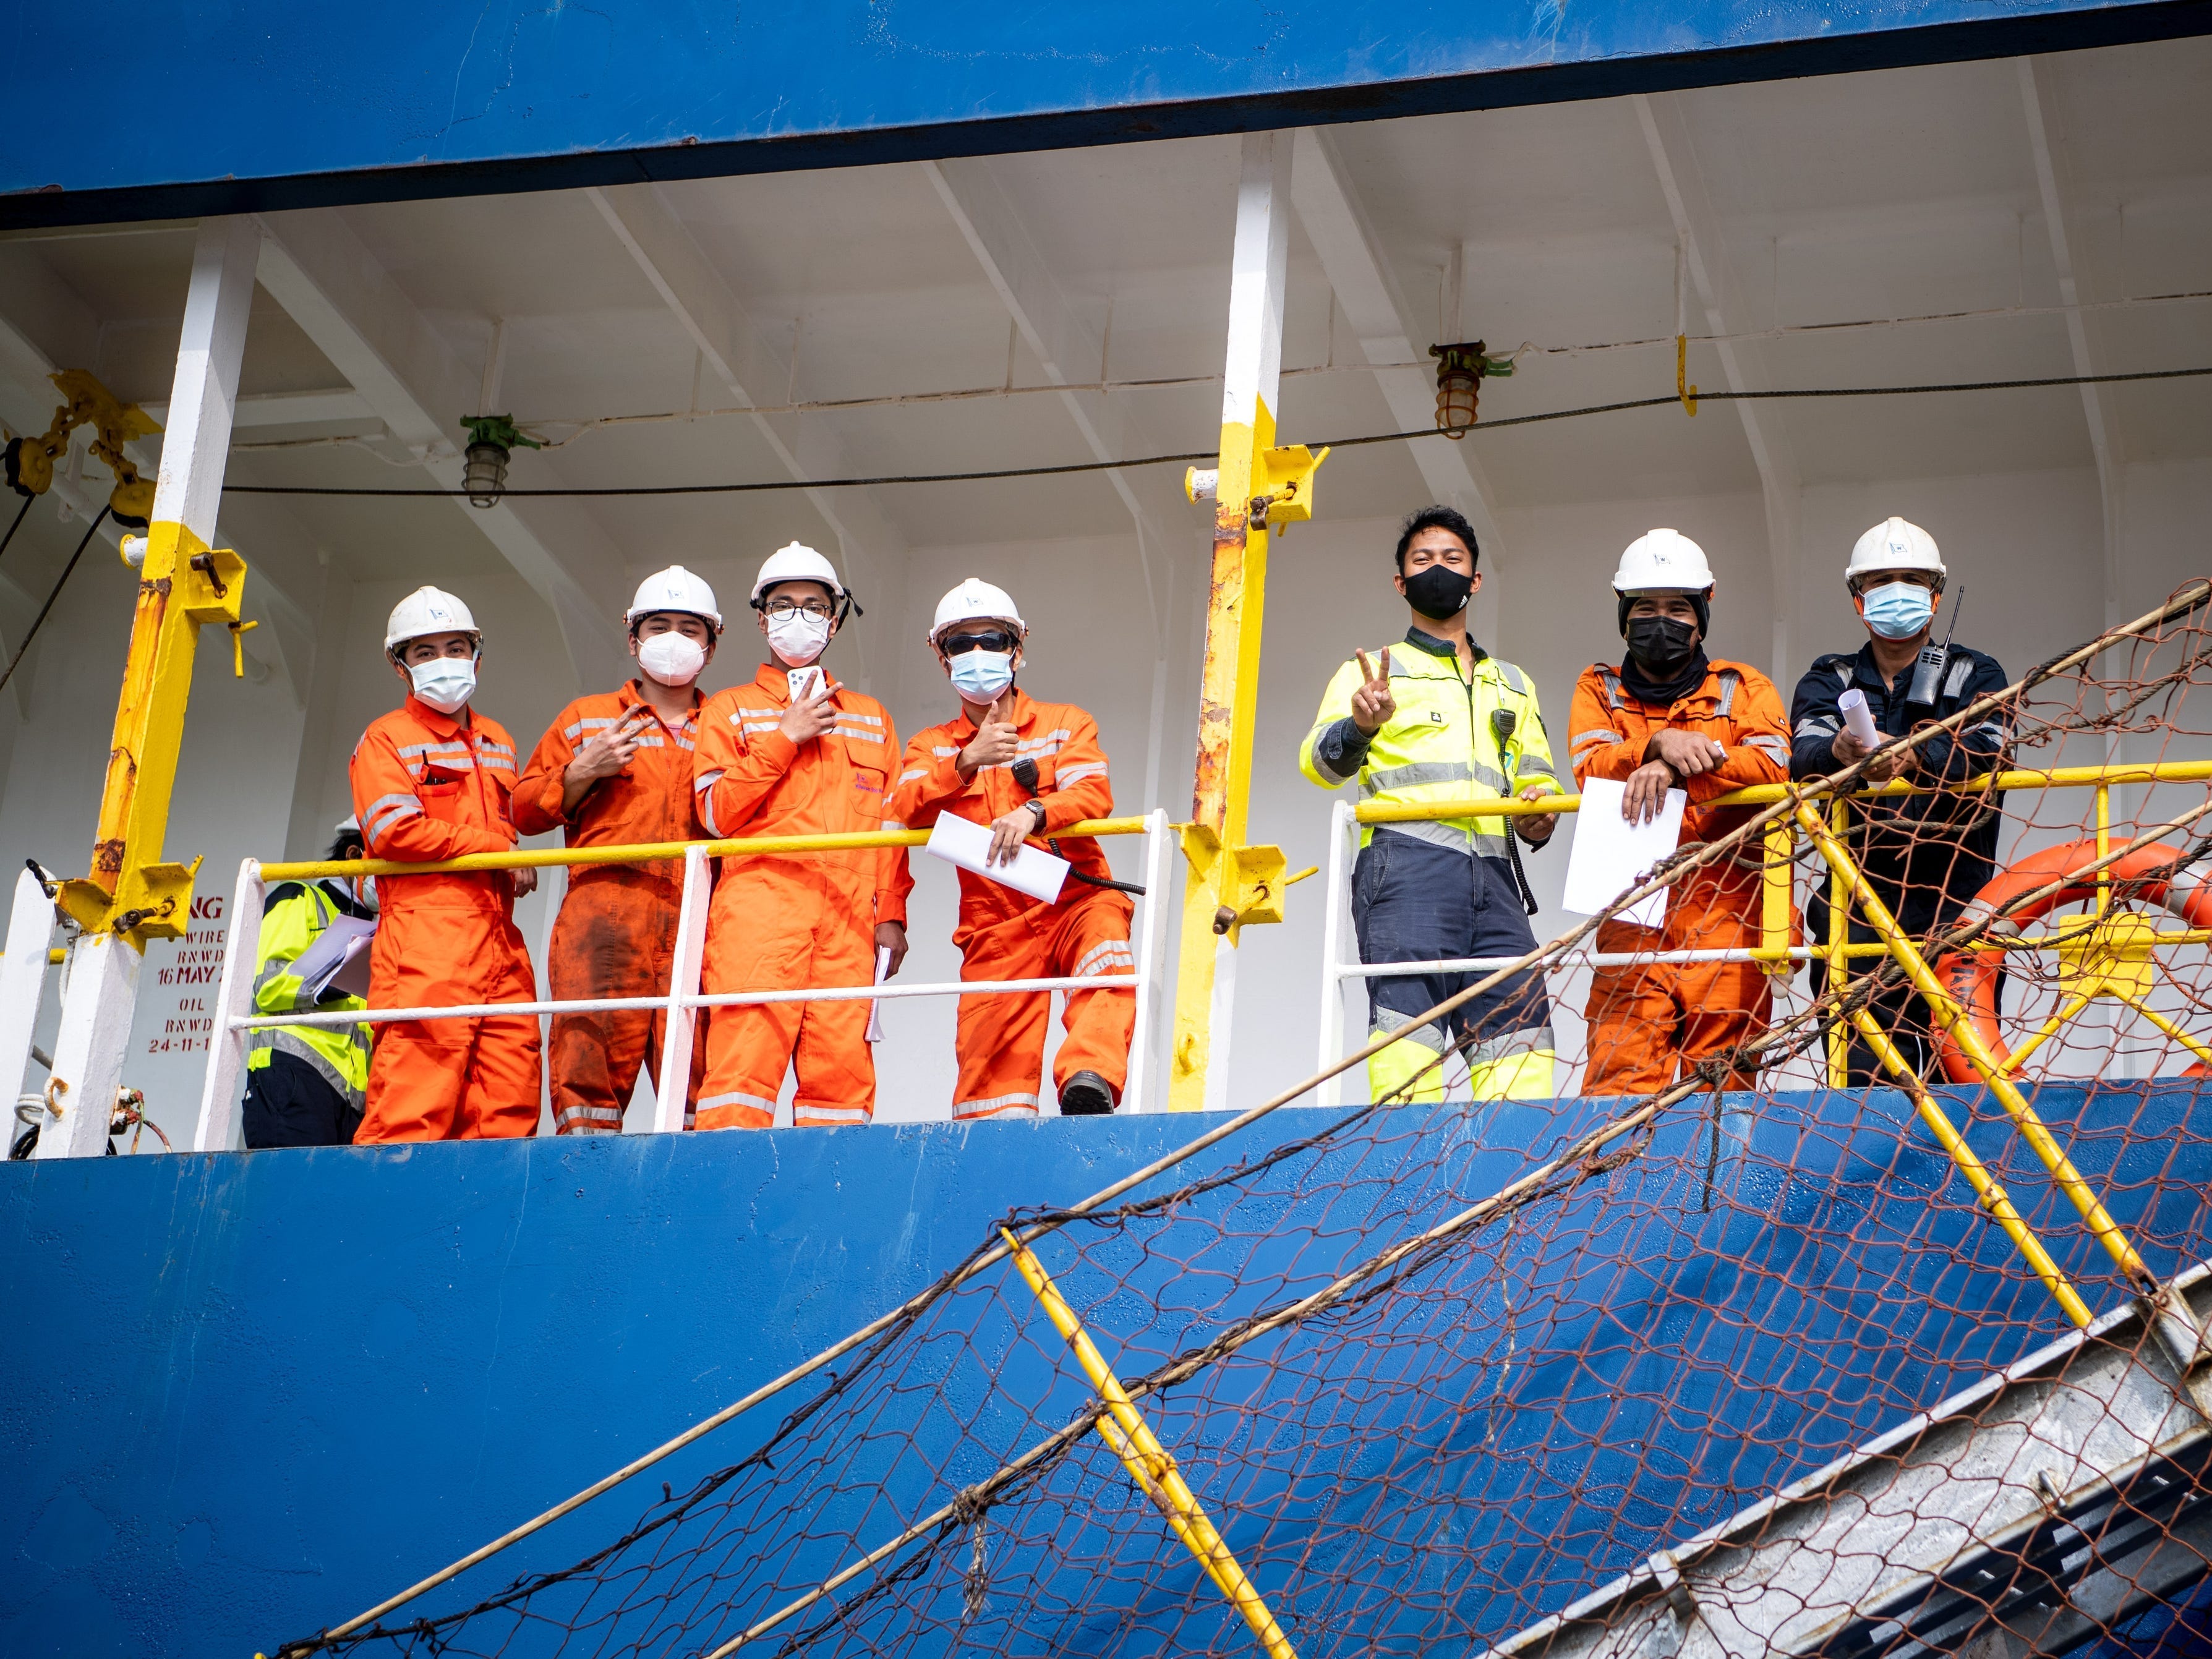 Seeleute mit Gesichtsmasken an Bord eines Schiffes.